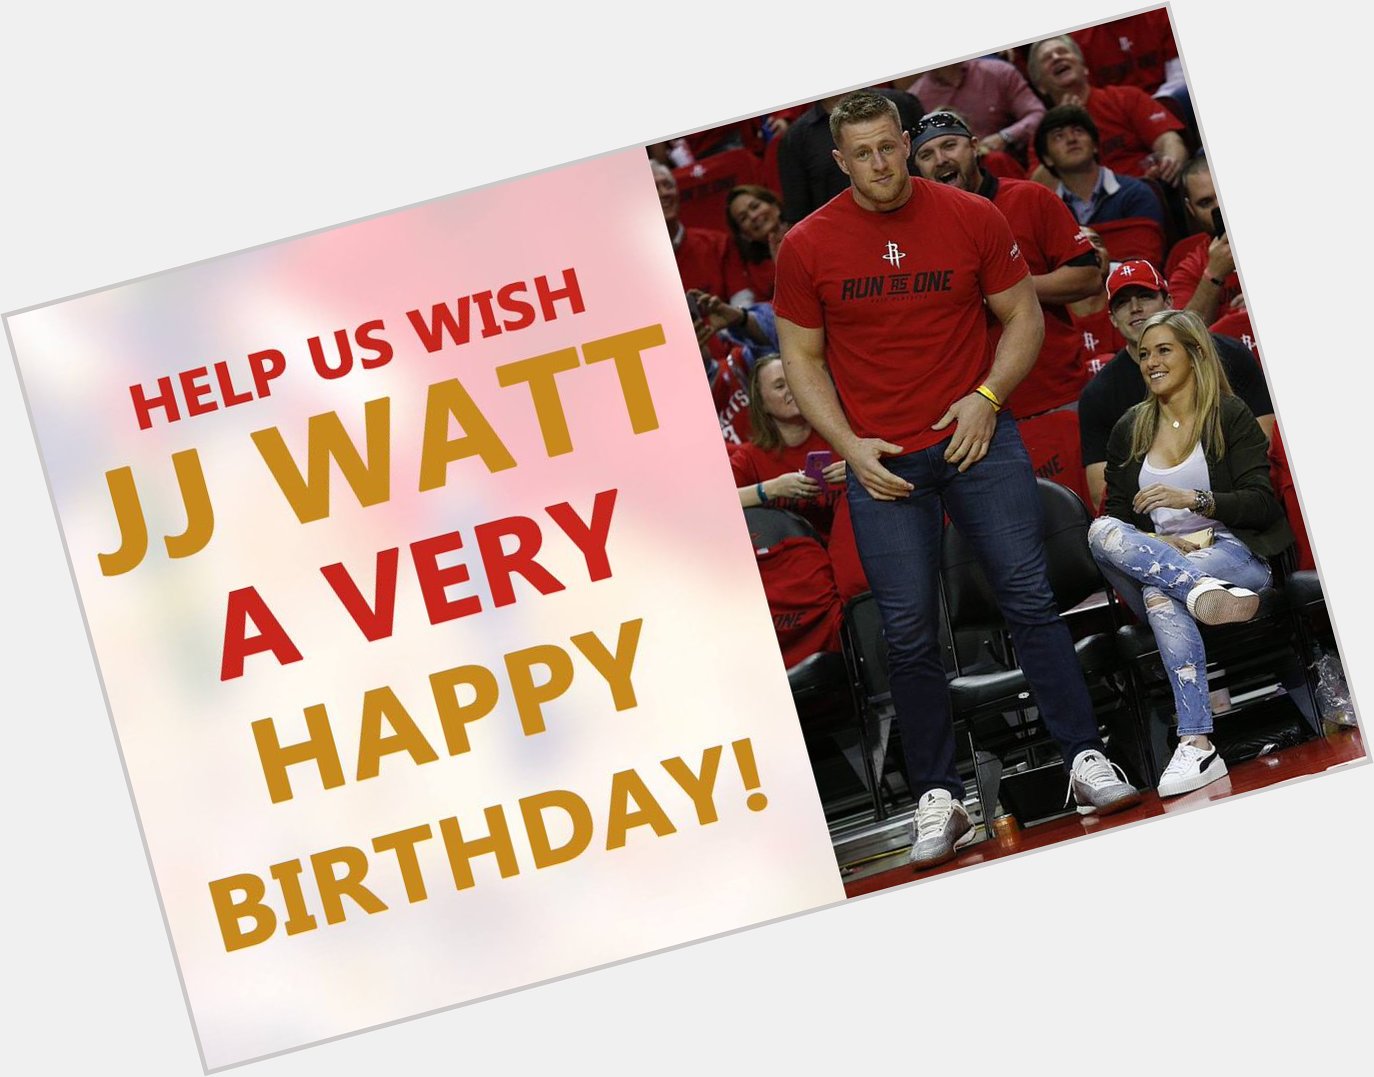 Happy birthday, JJ Watt! He\s 29 today! 